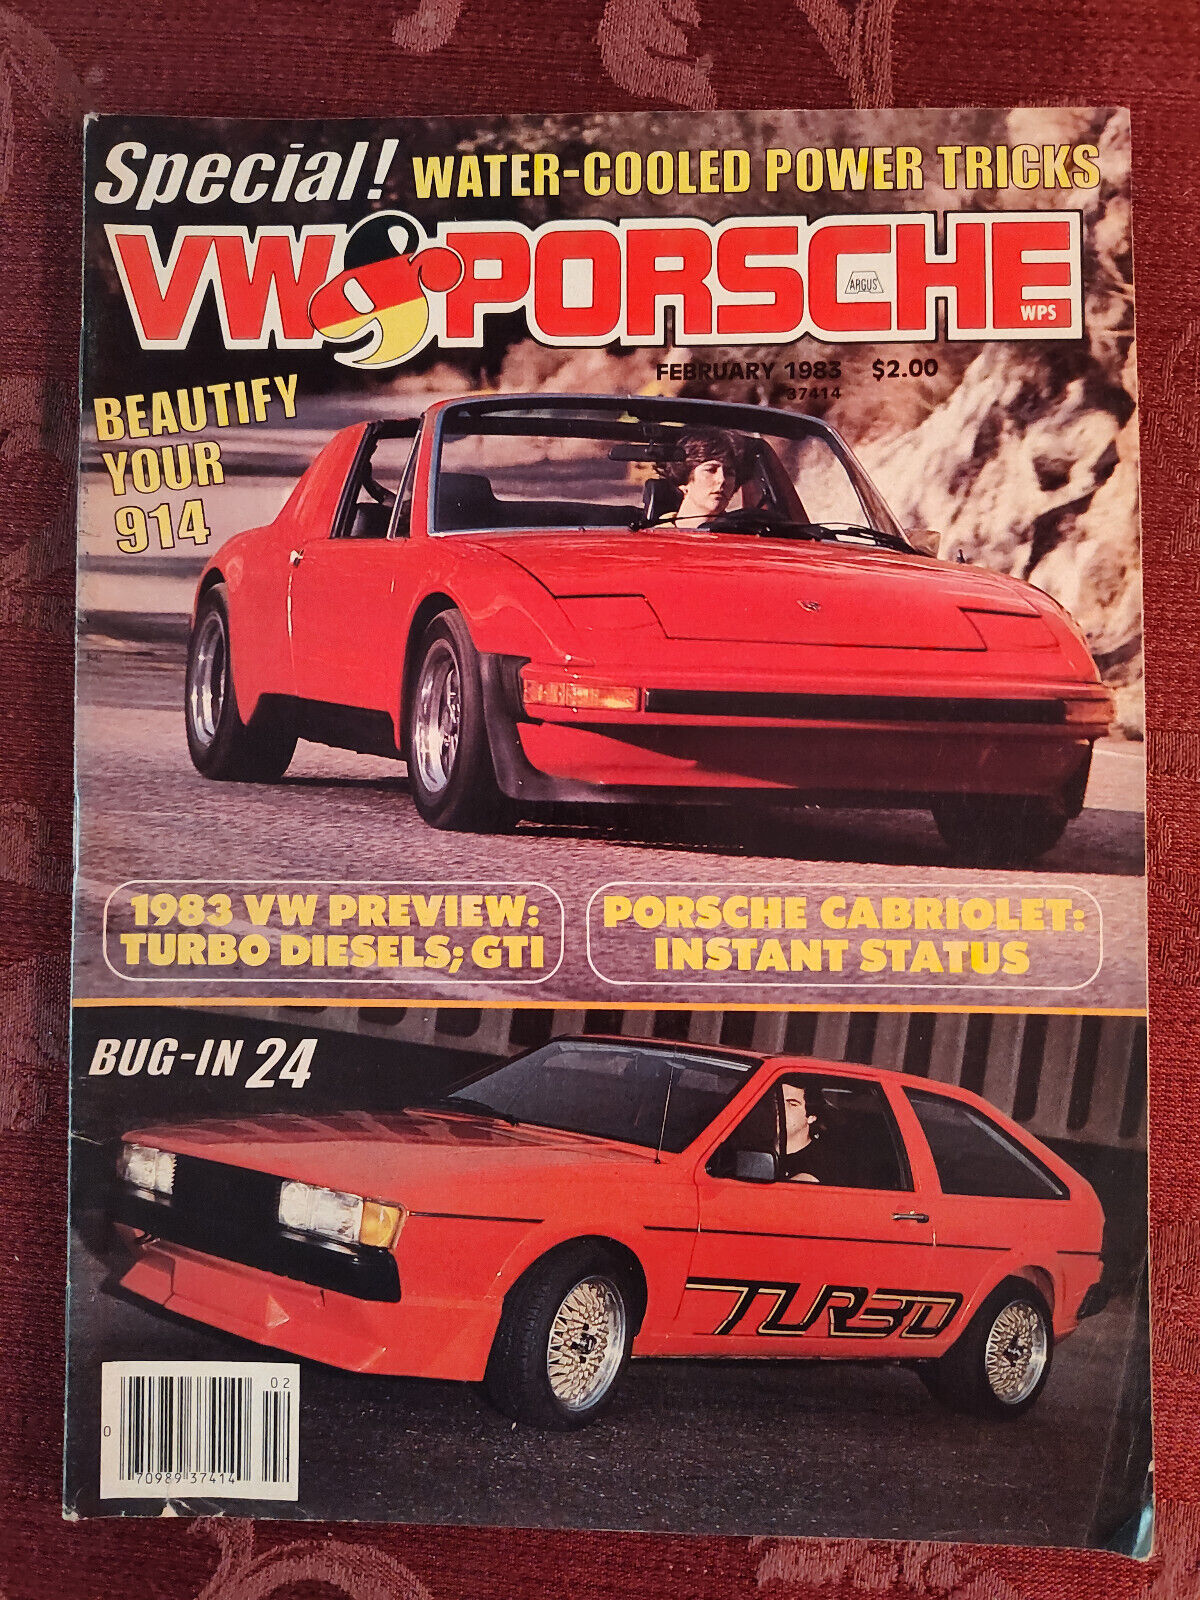 Primary image for Rare VW PORSCHE Magazine February 1983 Chalon 914 Turbo Scirocco Volkswagen